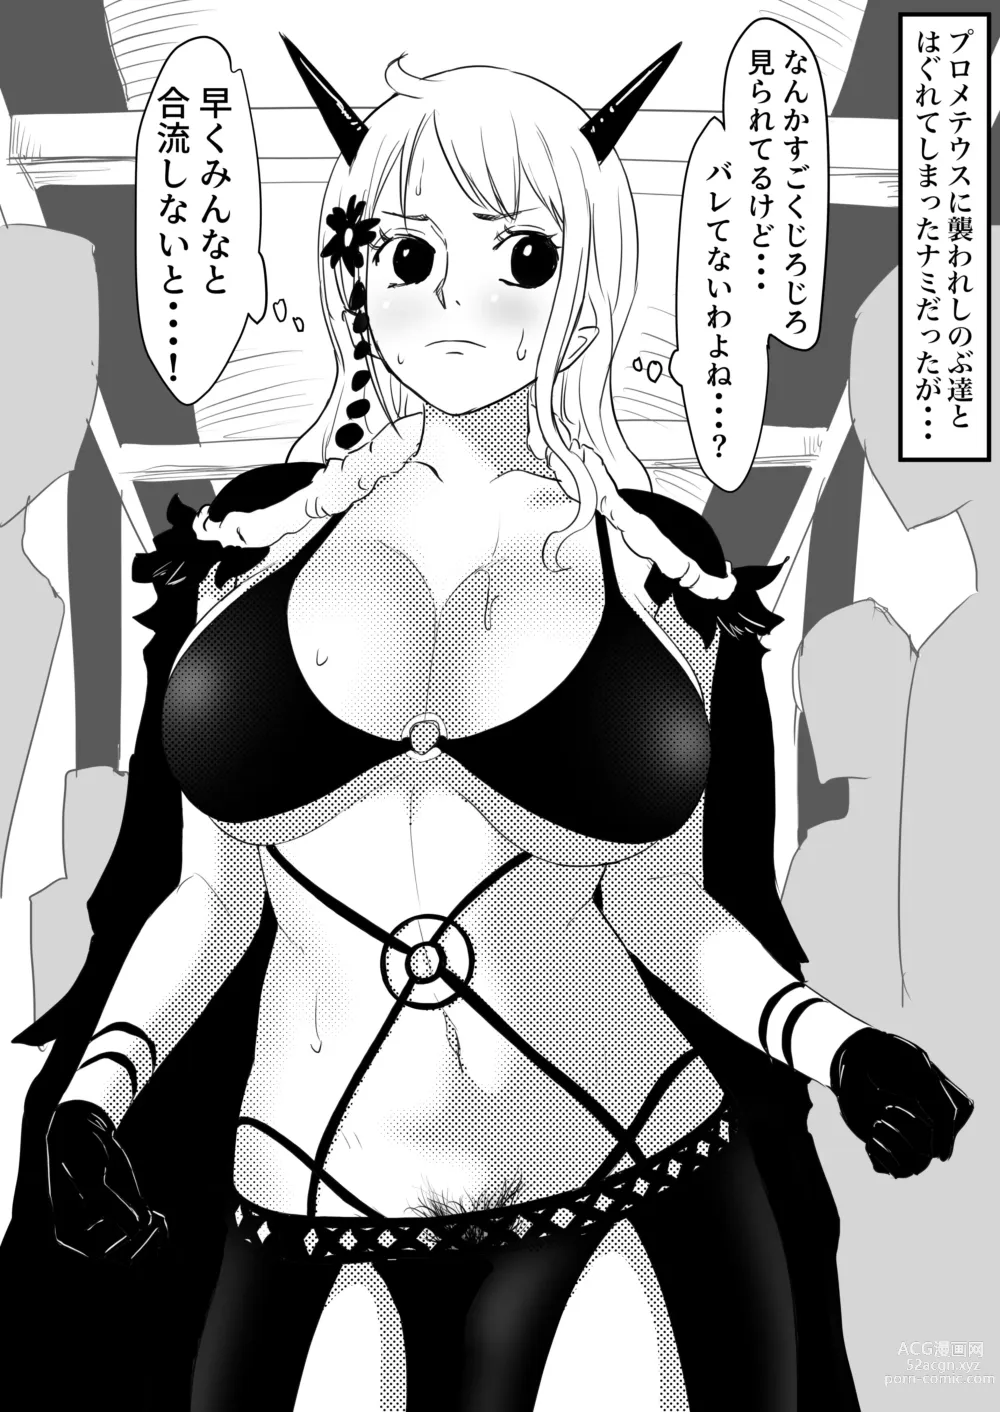 Page 56 of doujinshi Nami Manga + various bonus